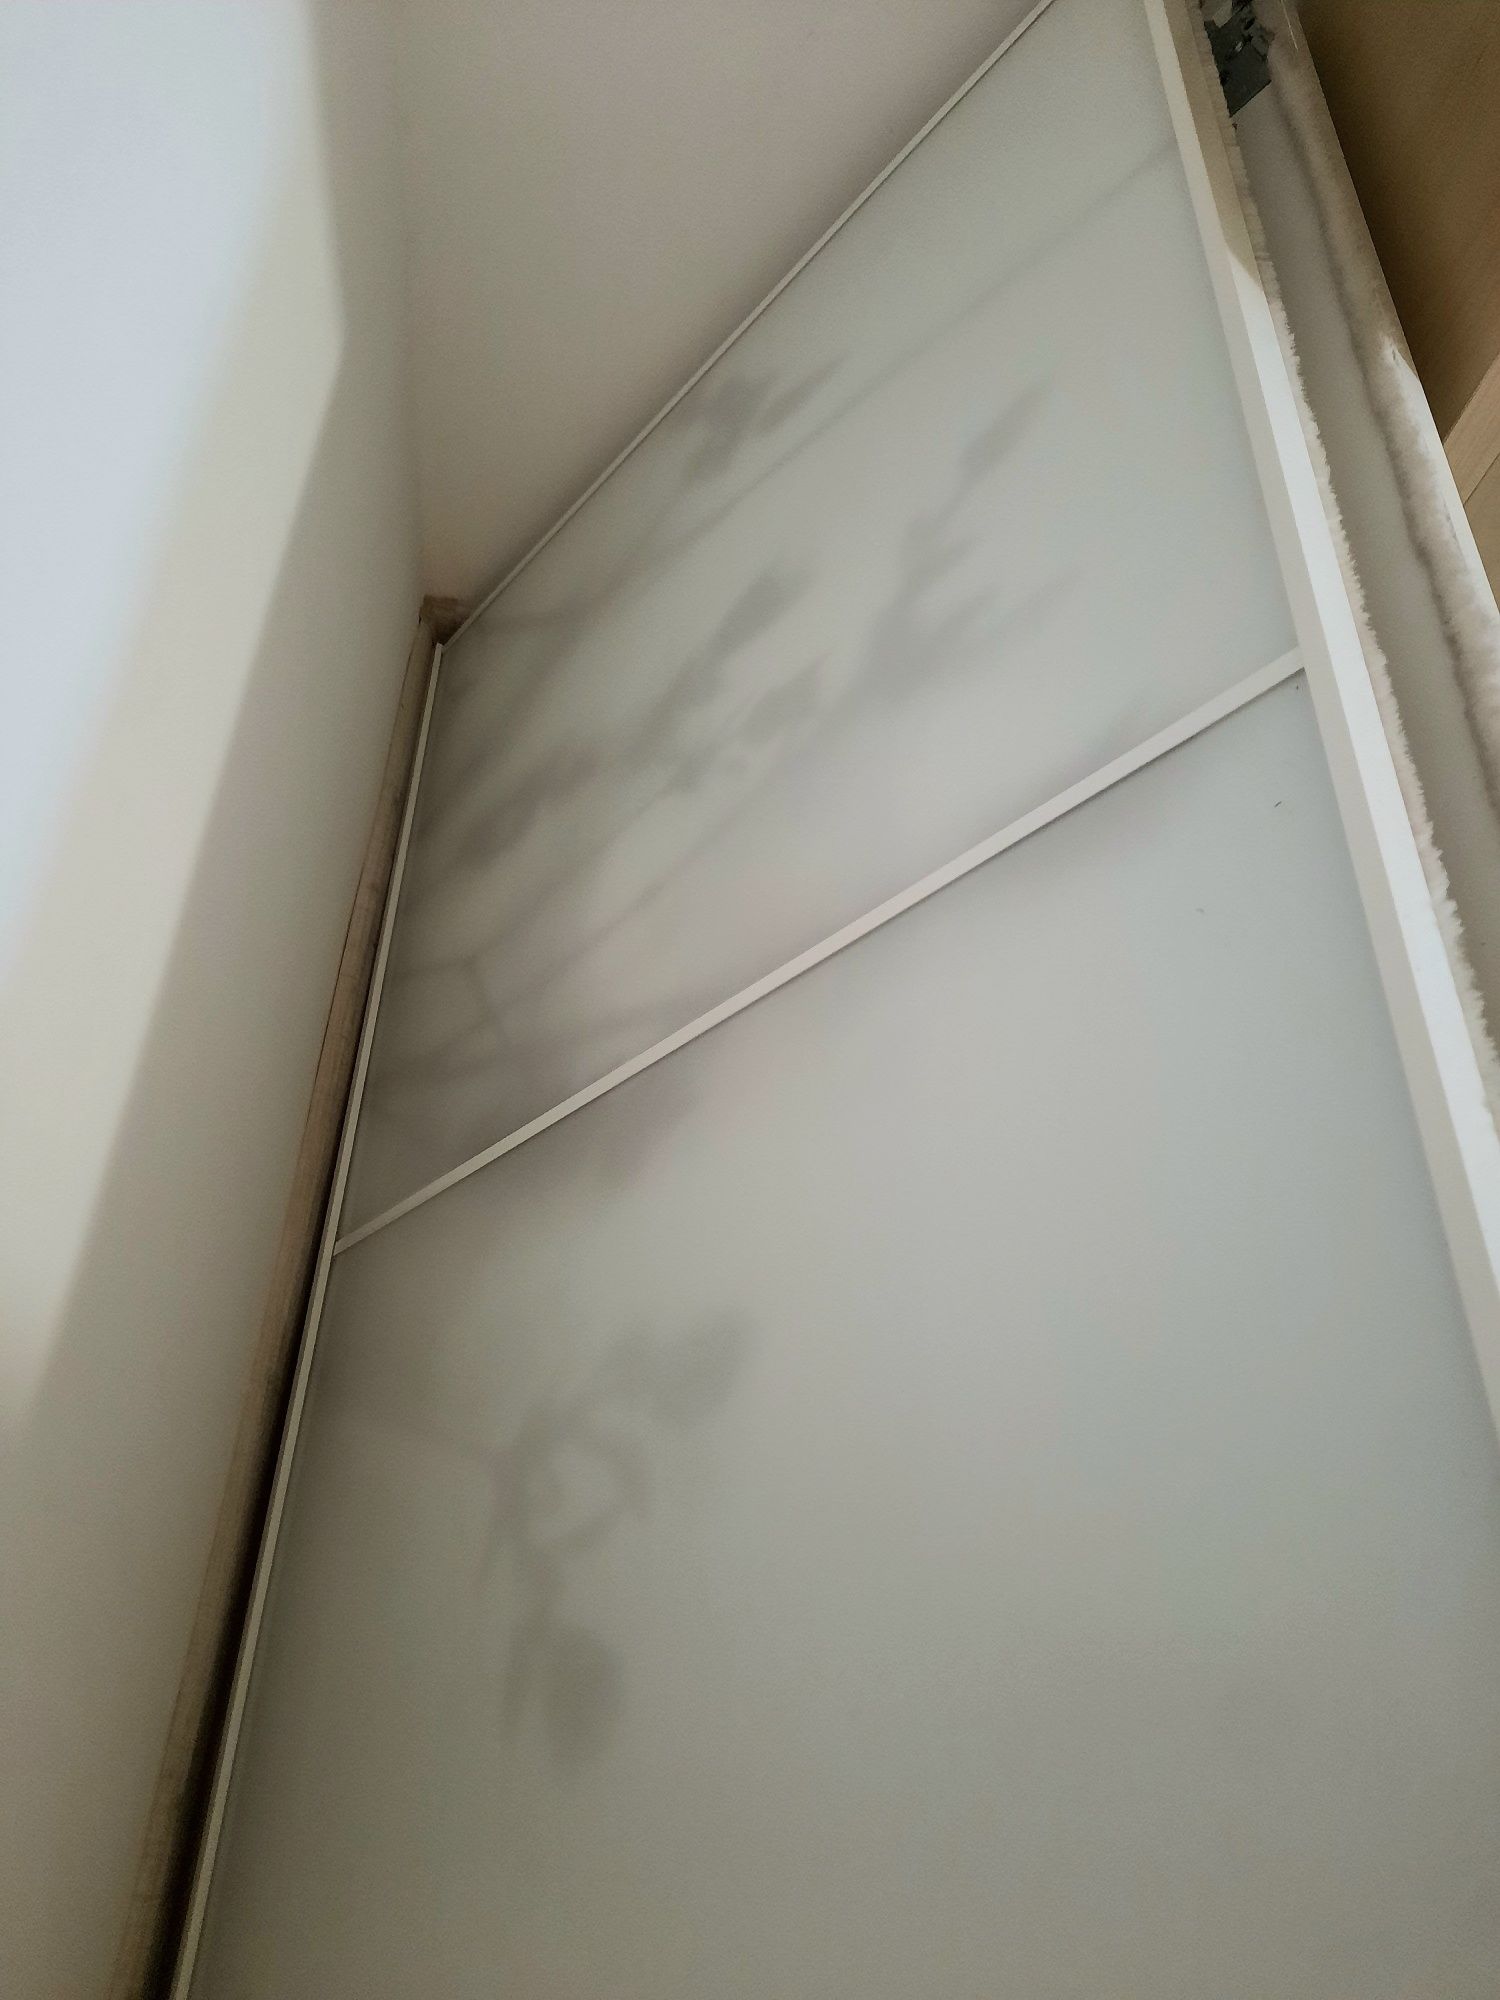 Szklane drzwi do szafy Ikea Pax 75 2 szt